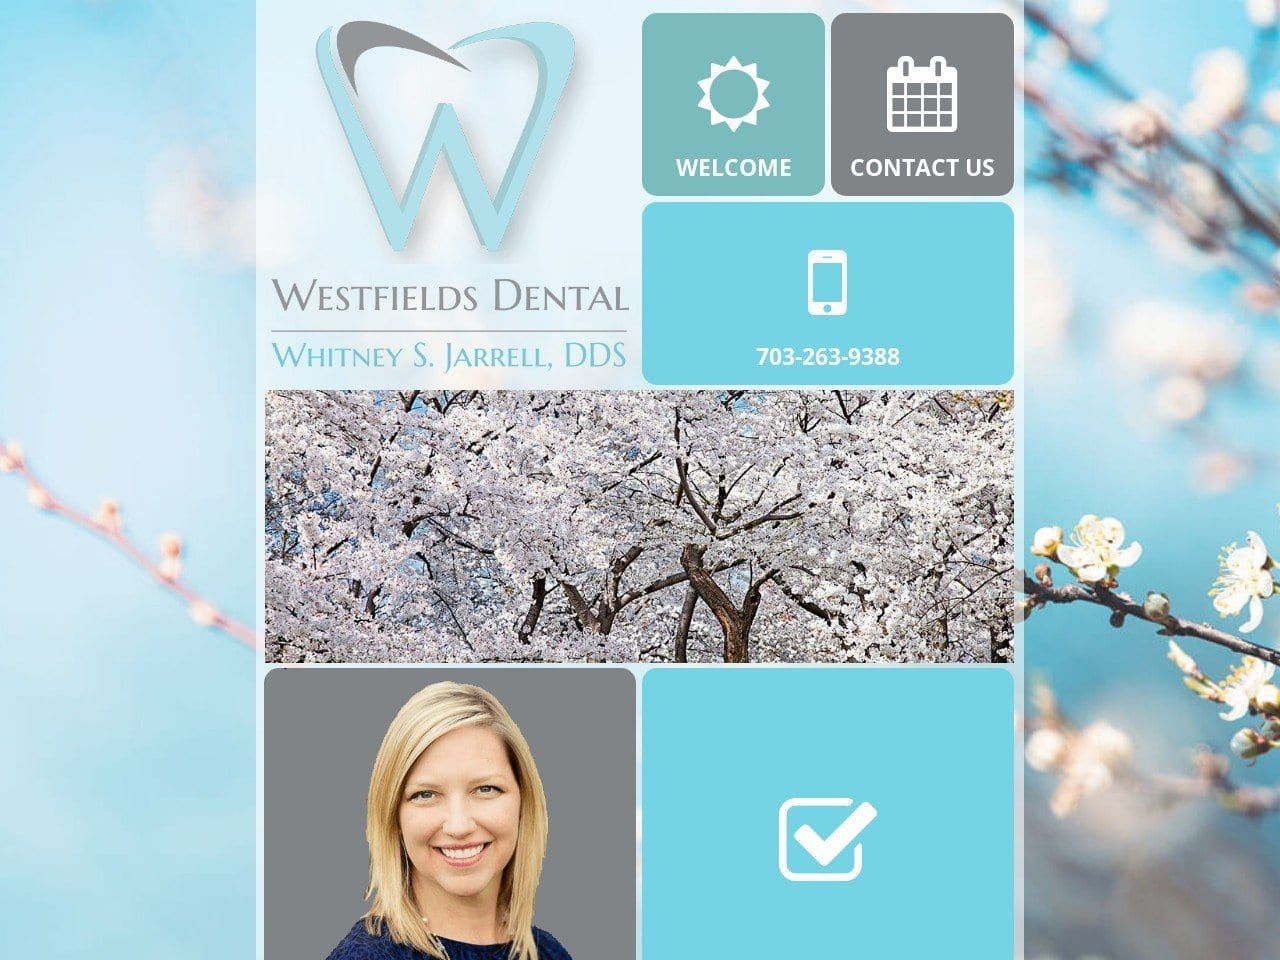 Westfields Dental Website Screenshot from westfieldsdental.com